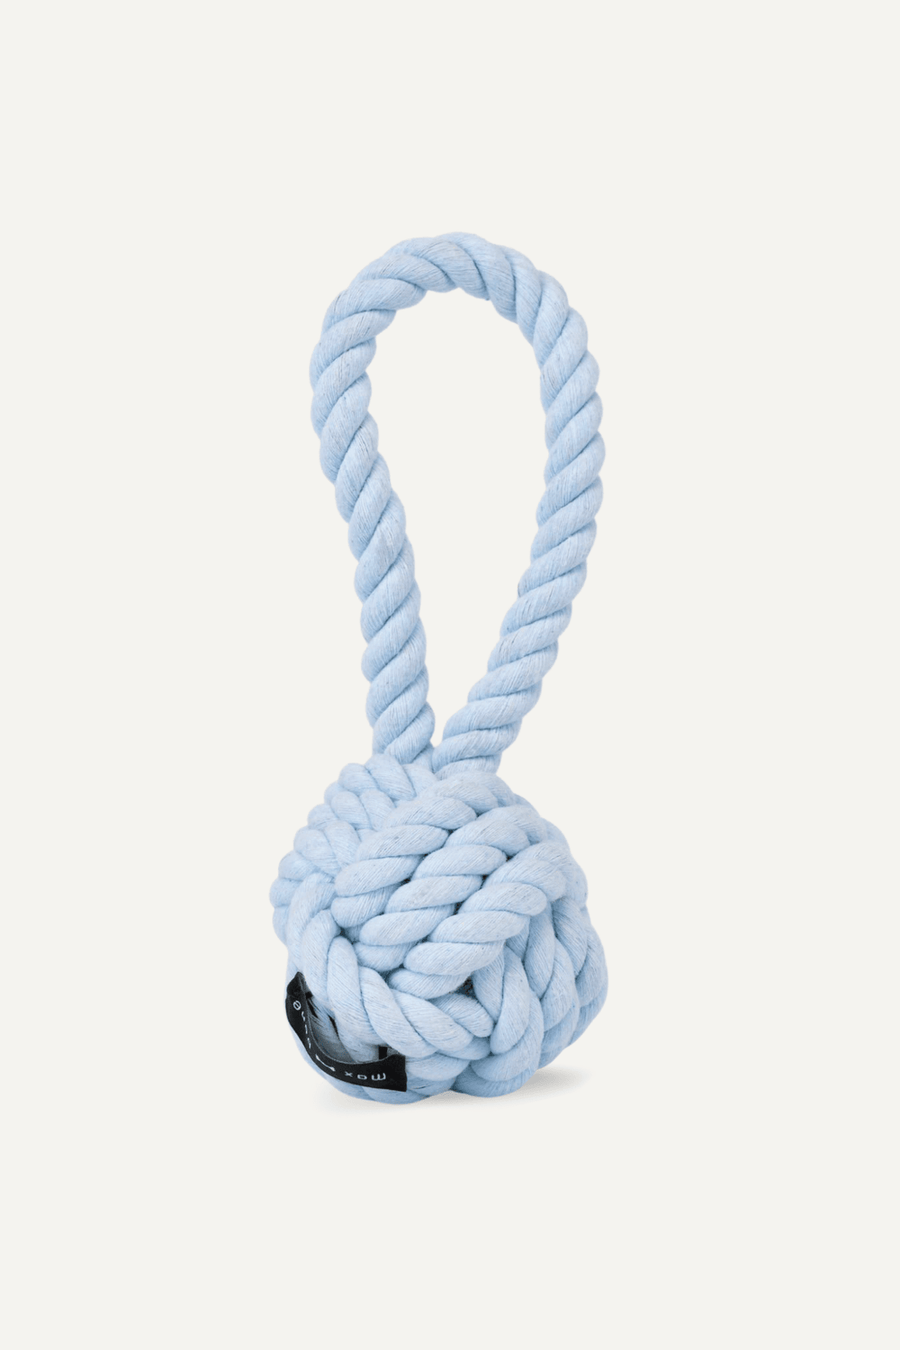 Maxbone Blue Large Twisted Rope Toy